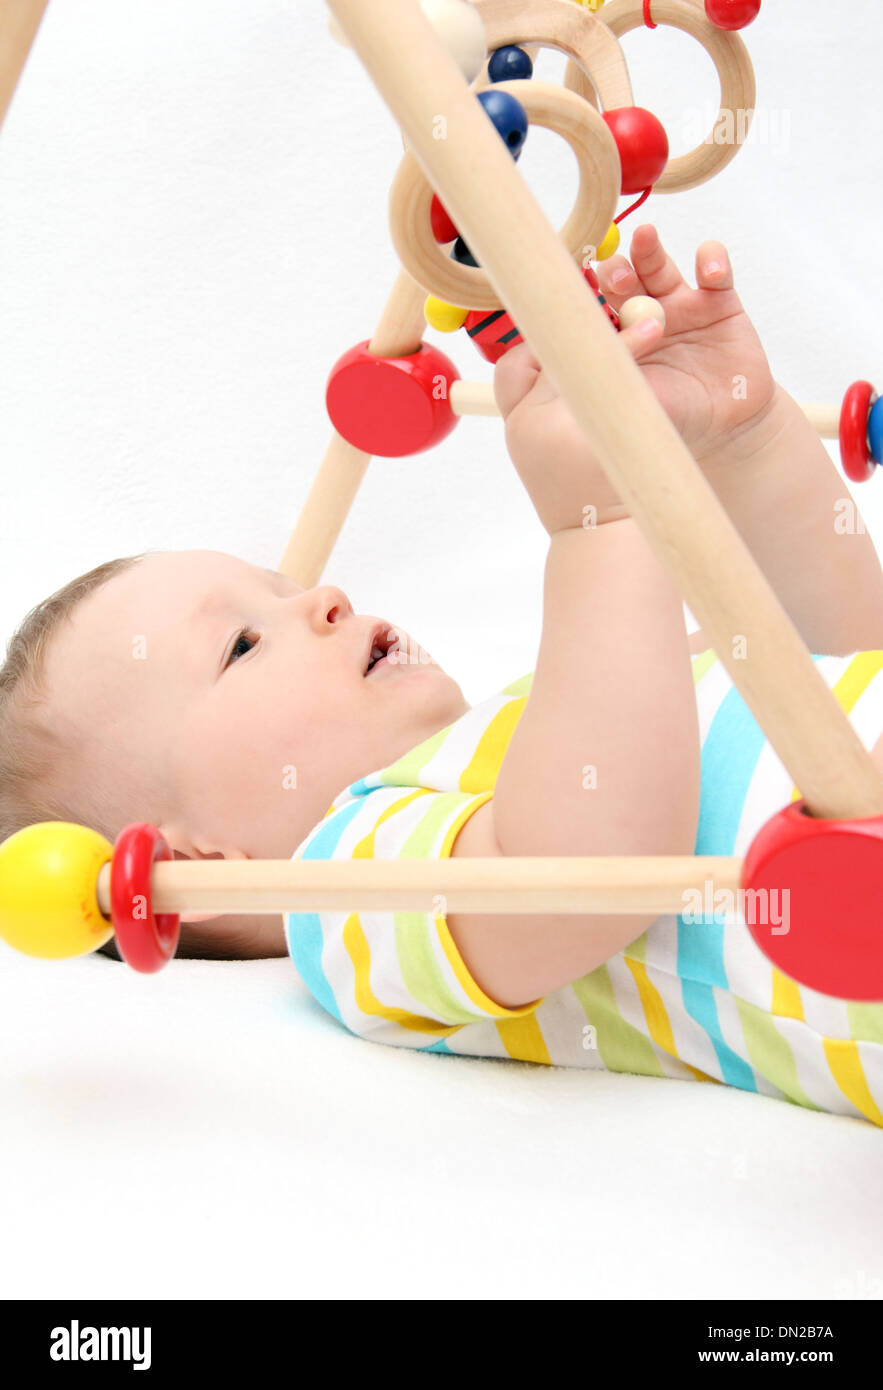 Beau bébé sur le dos en jouant avec des jouets Banque D'Images